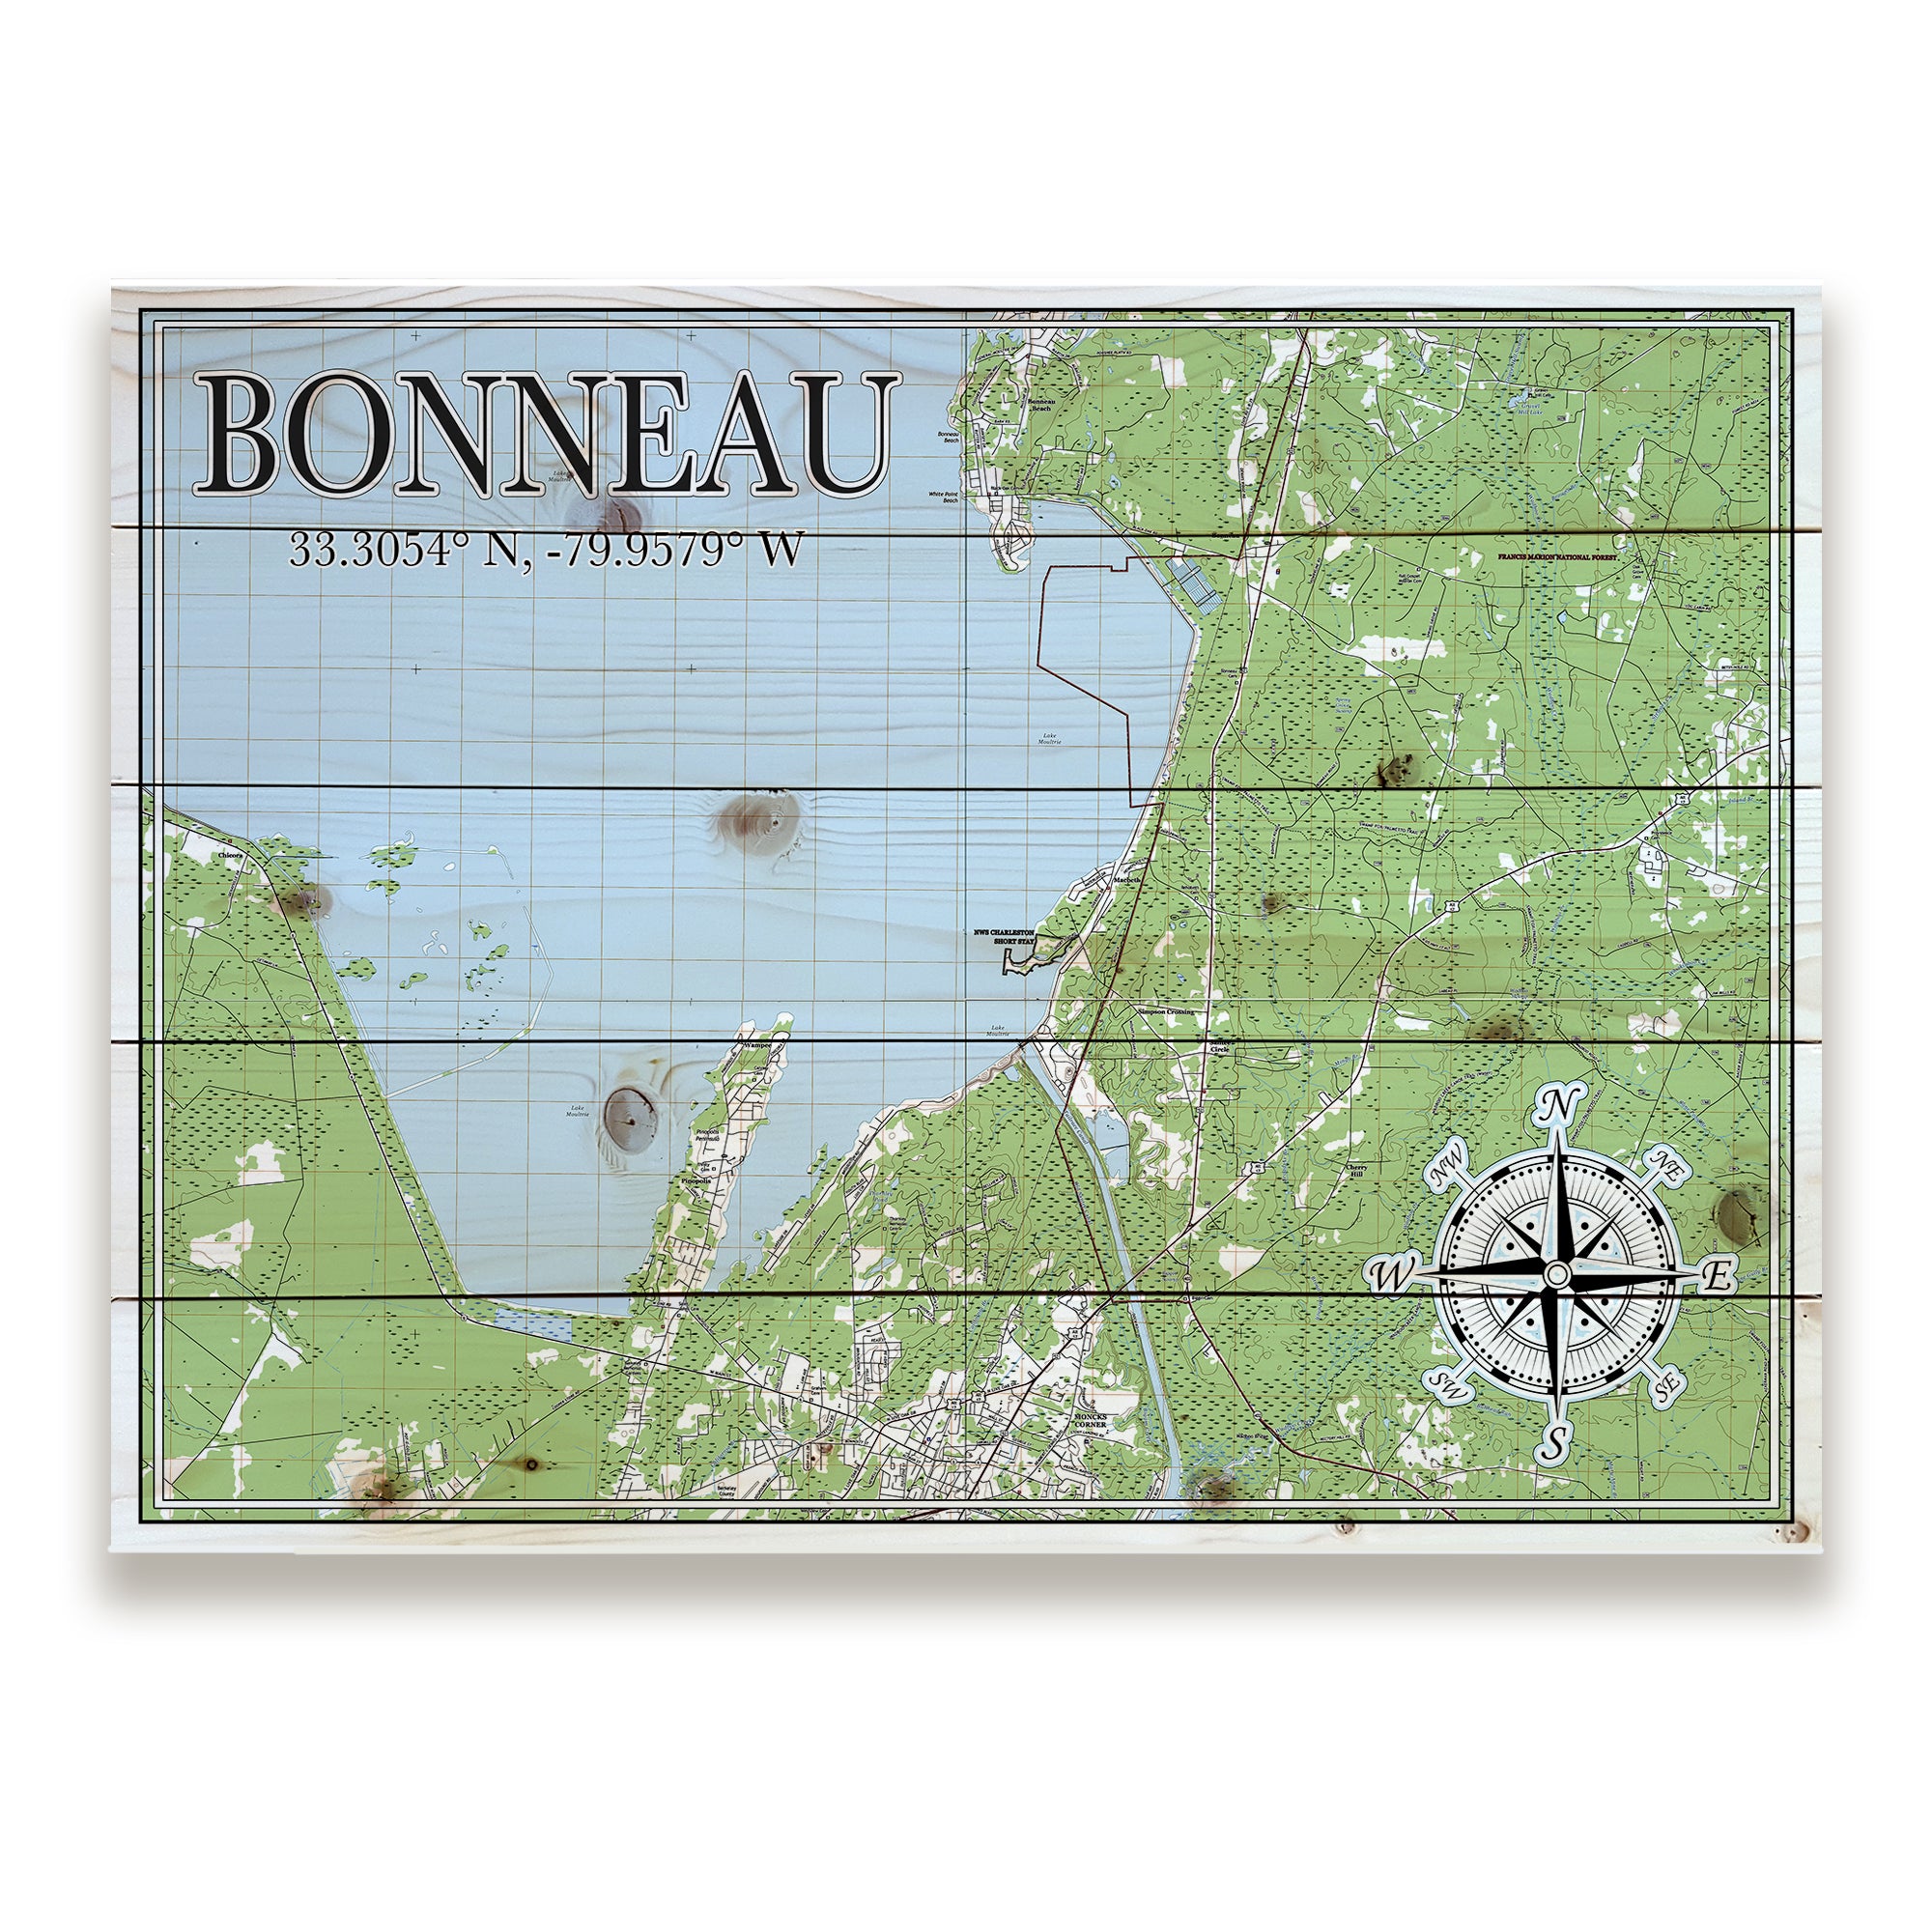 Bonneau, SC Pallet Map